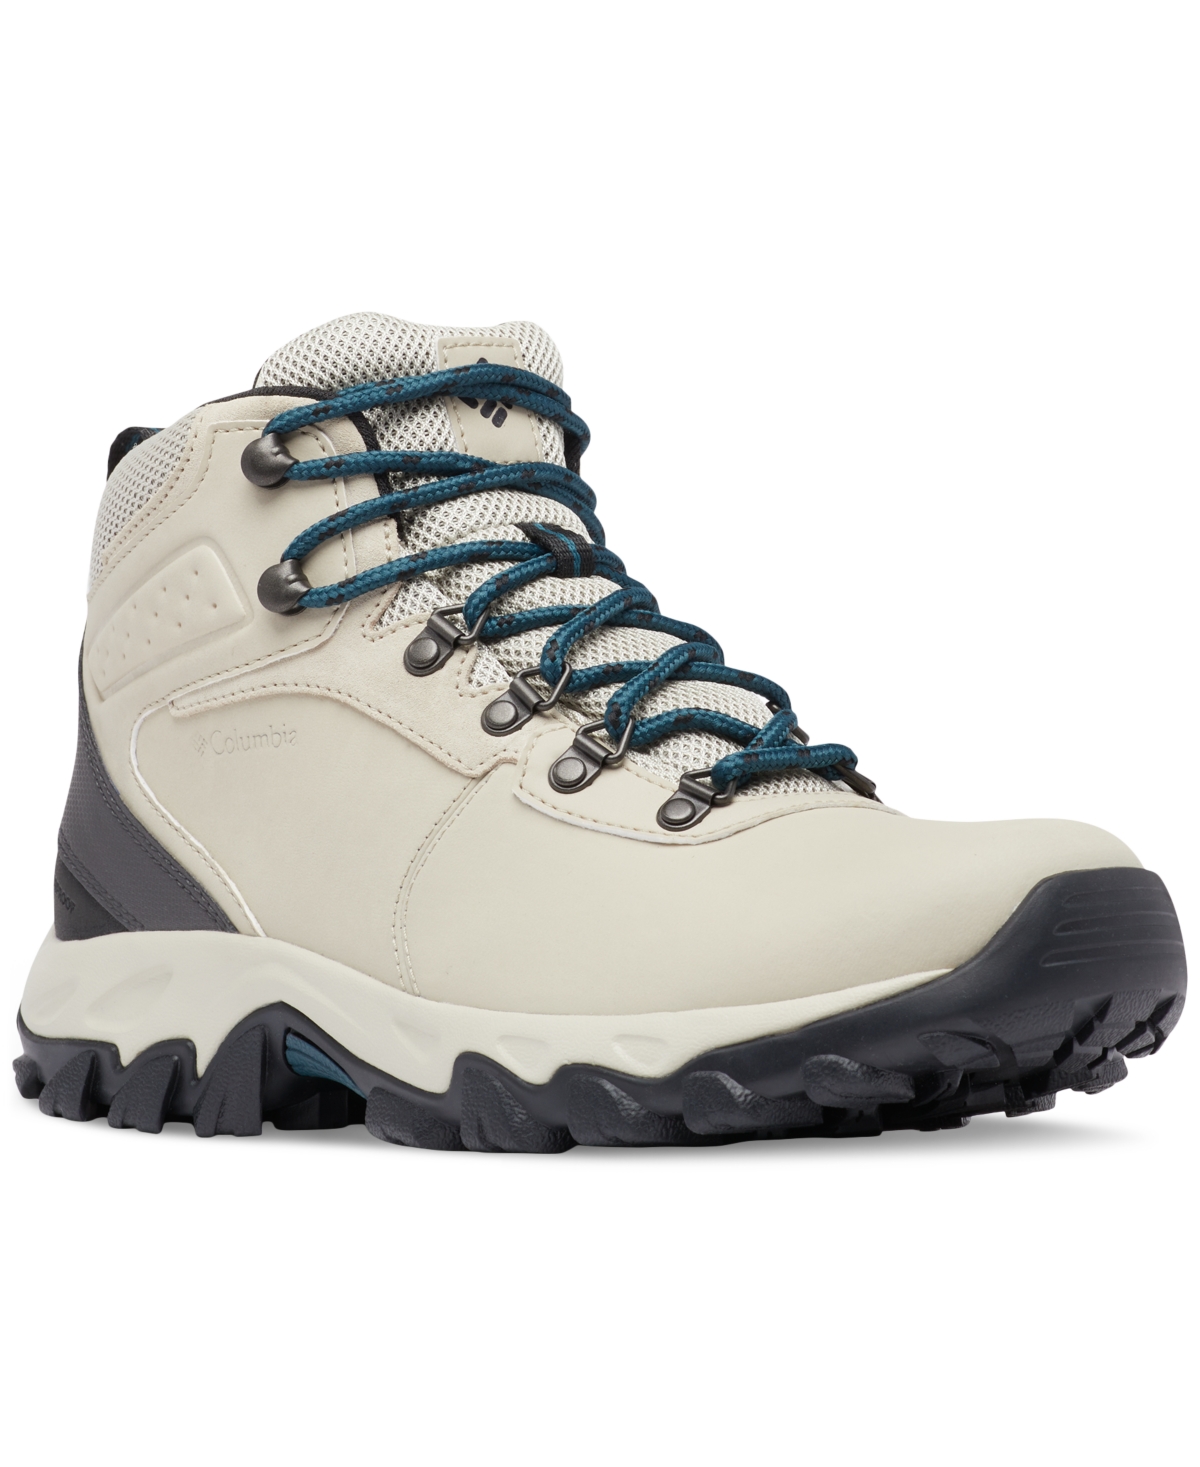 Columbia Men's Newton Ridge Plus Ii Waterproof Hiking Boots In Light Clay,nightwave